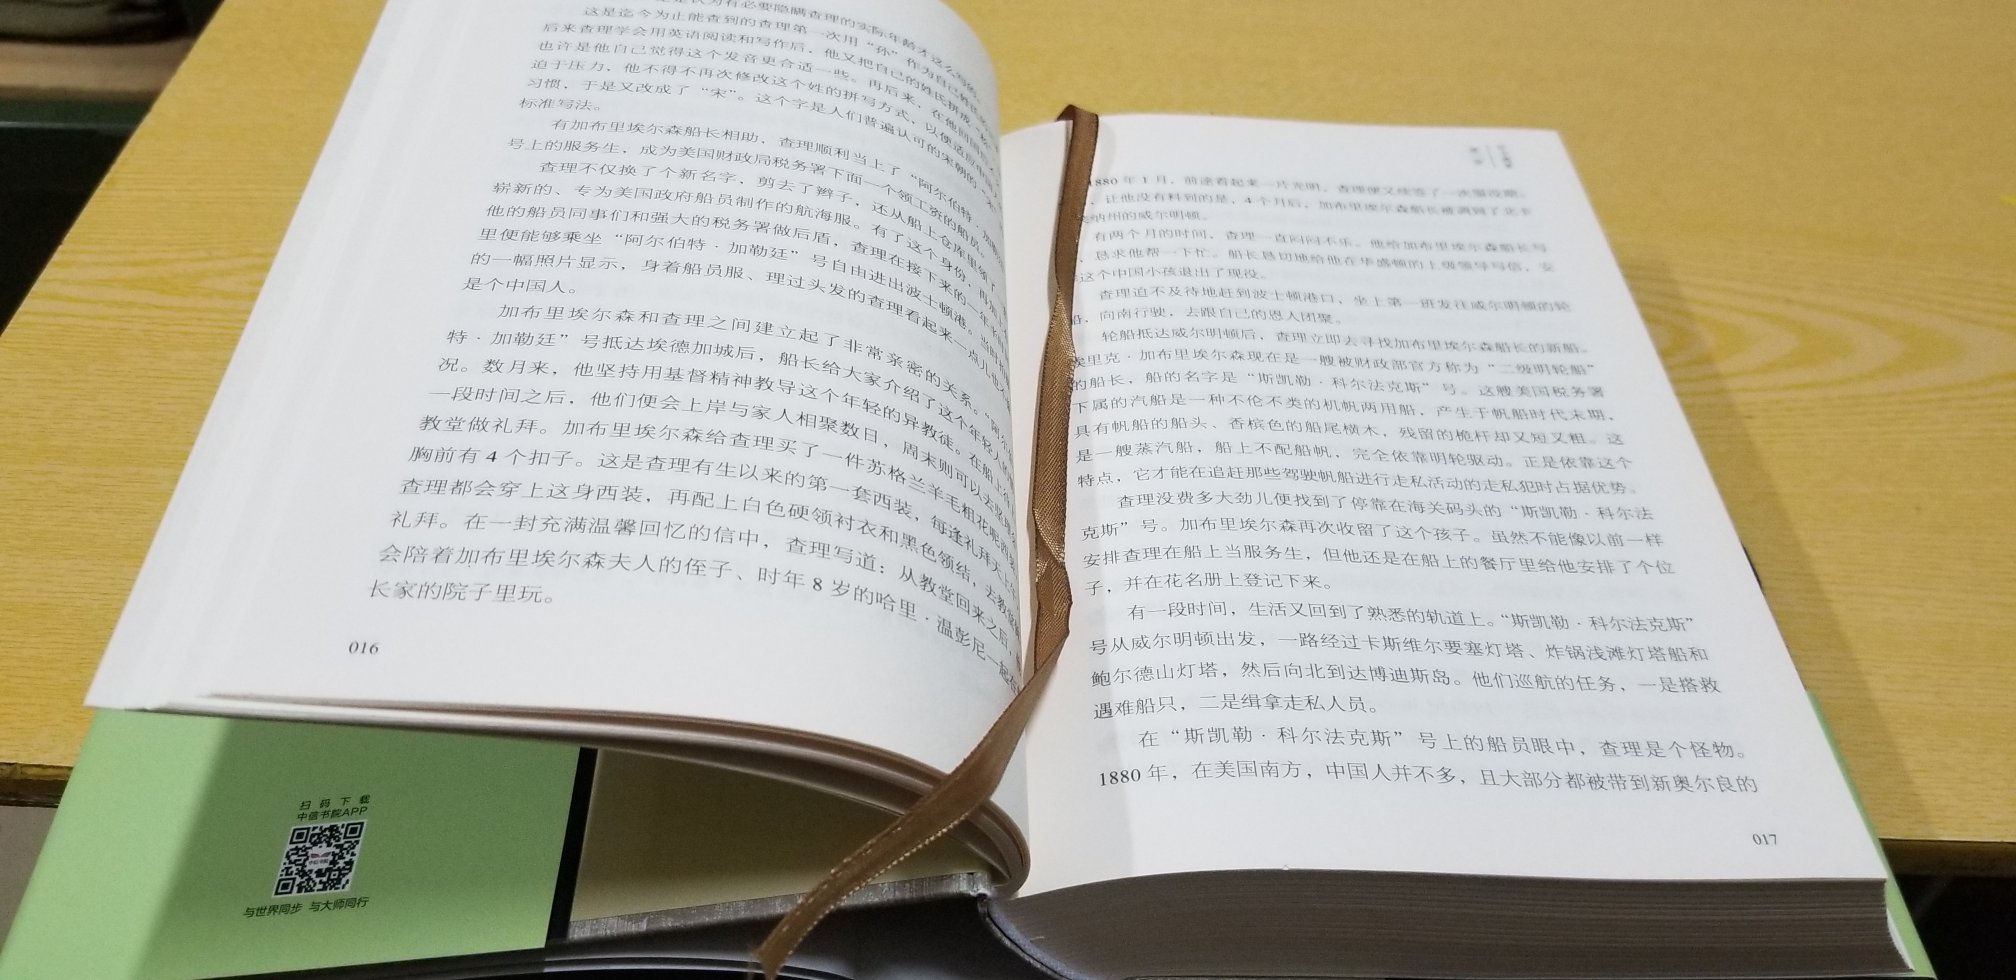 宋家 从来都是个大家族 故事情节经典 书的质量很好 封面和纸质都很高端大气 有贵族气质 值得细细品味 给你一个全新细致的中国现代历史。。。。